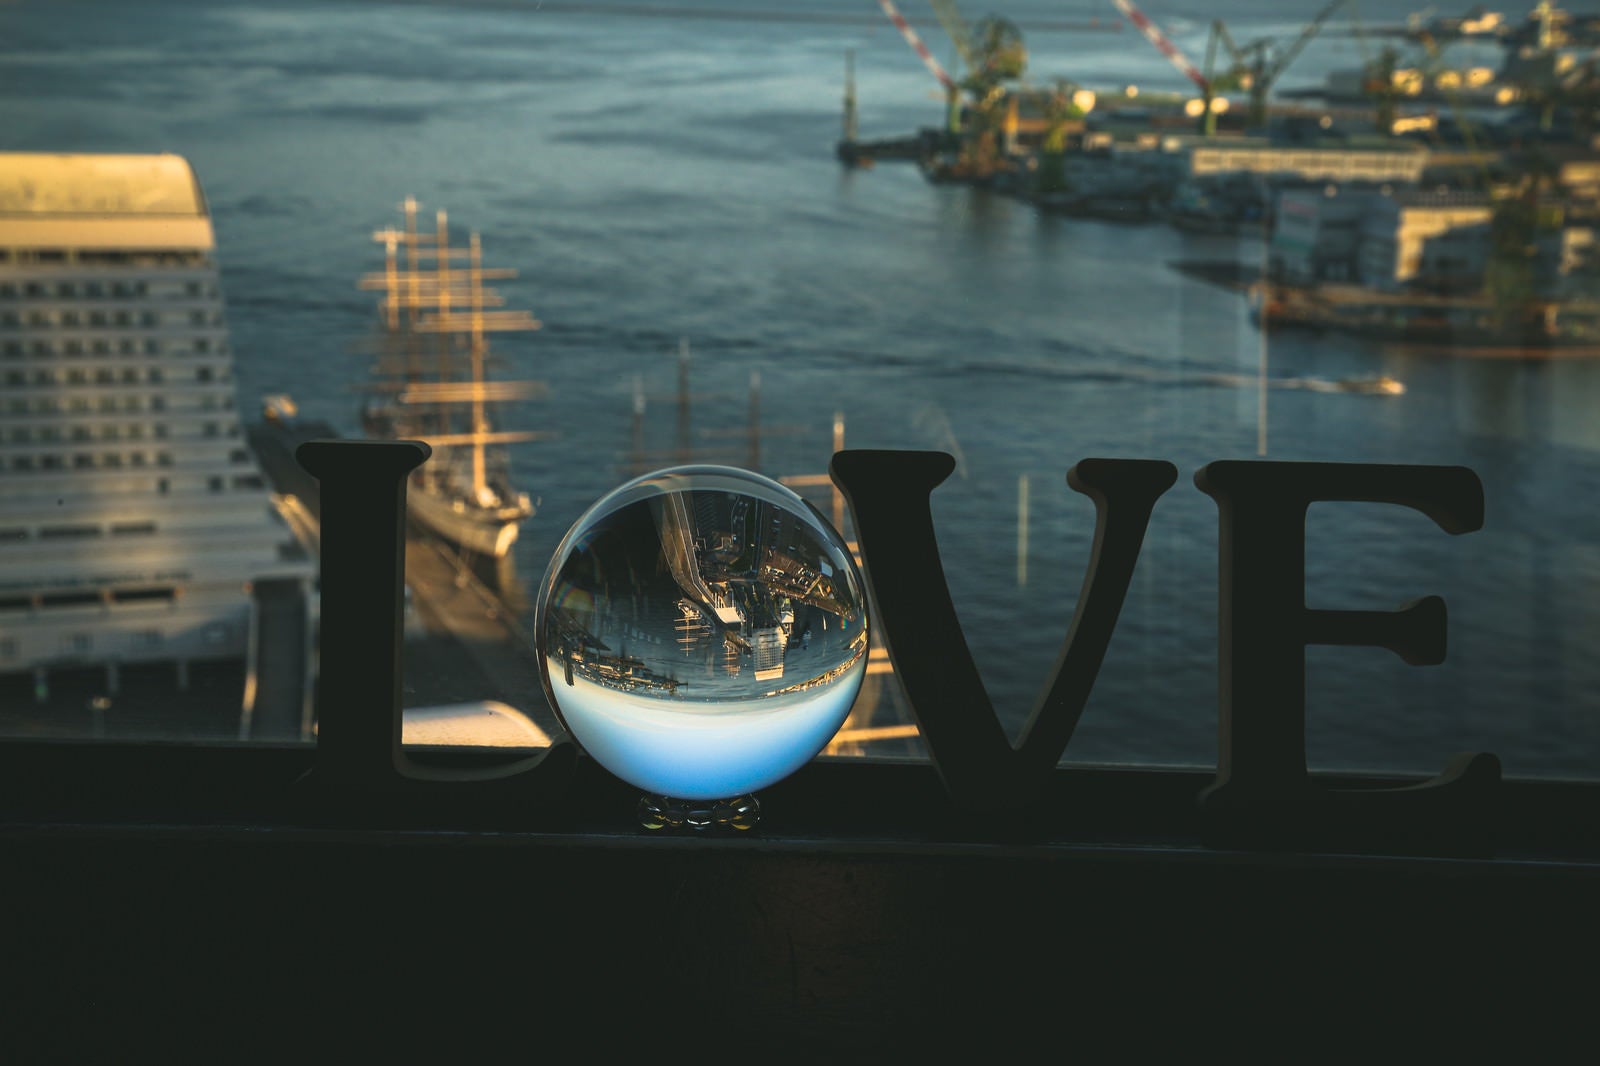 「ガラス玉に包まれた「LOVE」の文字と水晶玉」の写真